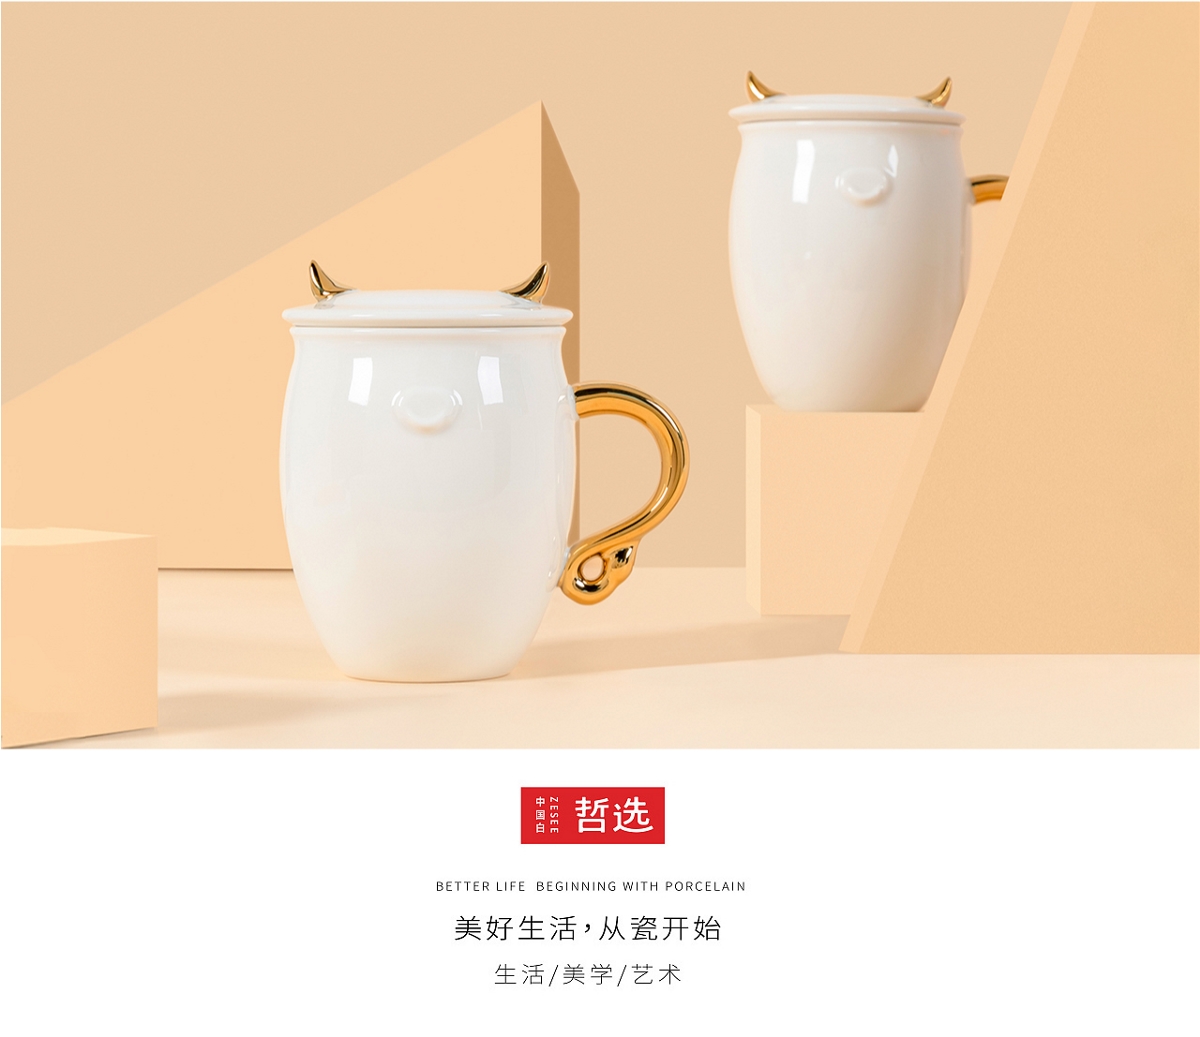 【 中国白·哲选 】新品曝光 金牛送福 陶瓷马克杯